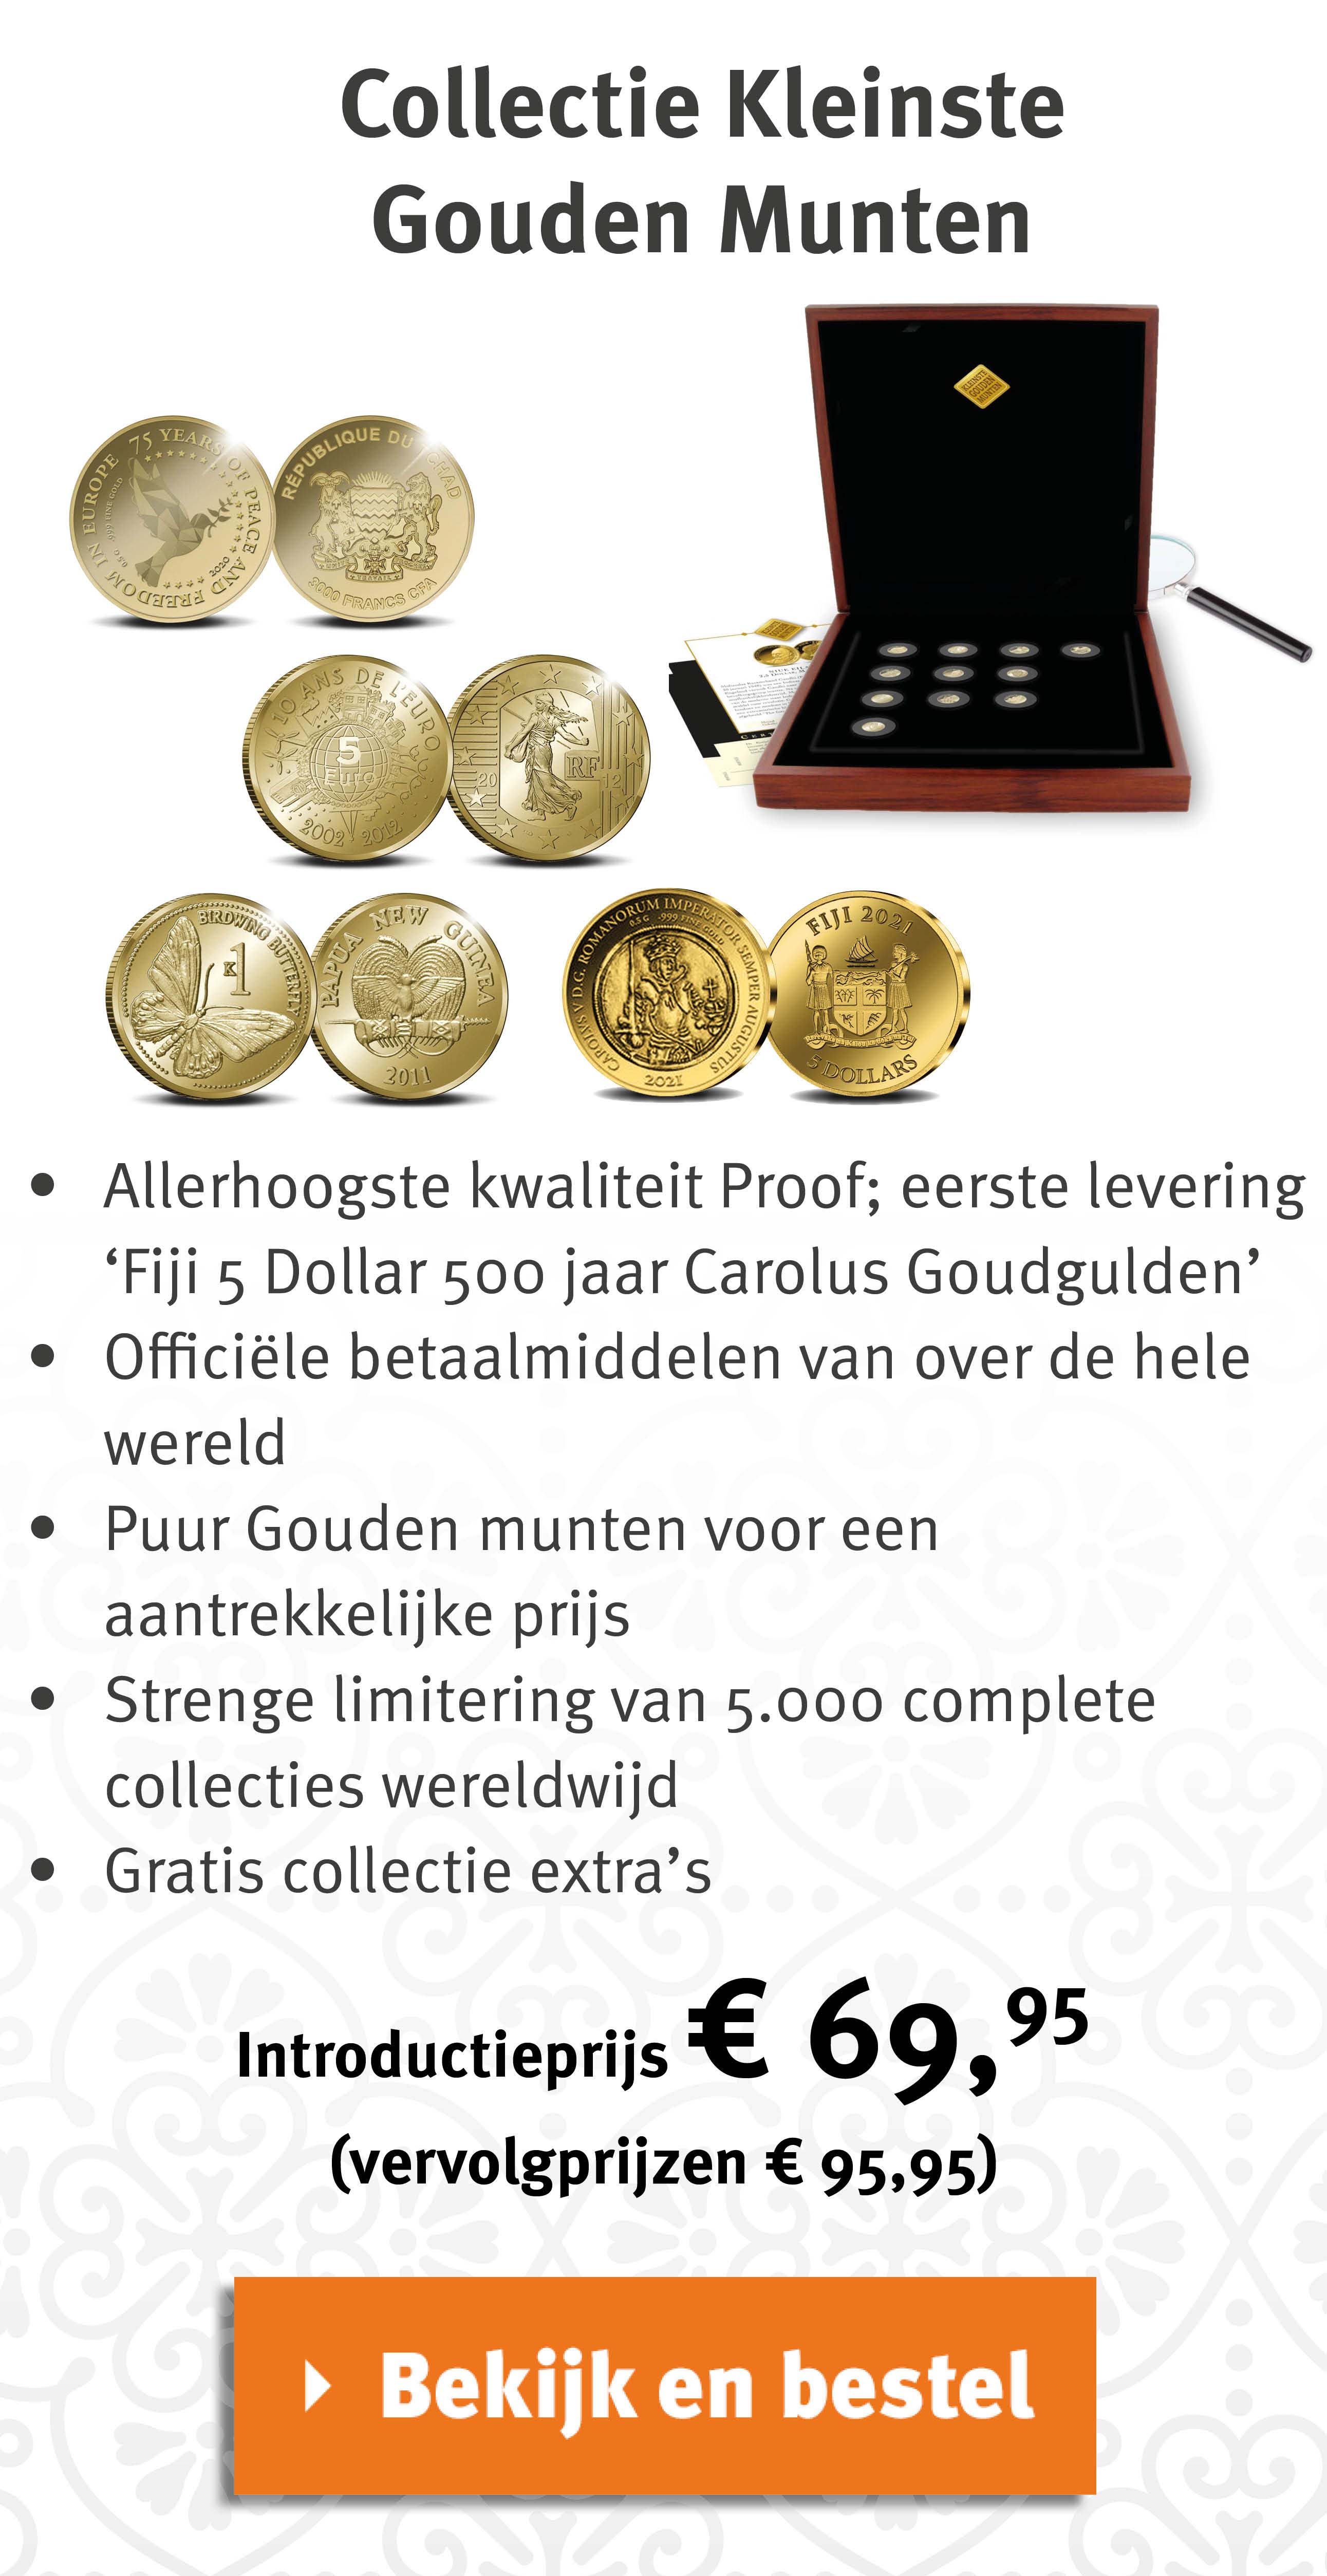 Bekijk en bestel: Collectie Kleinste Gouden Munten